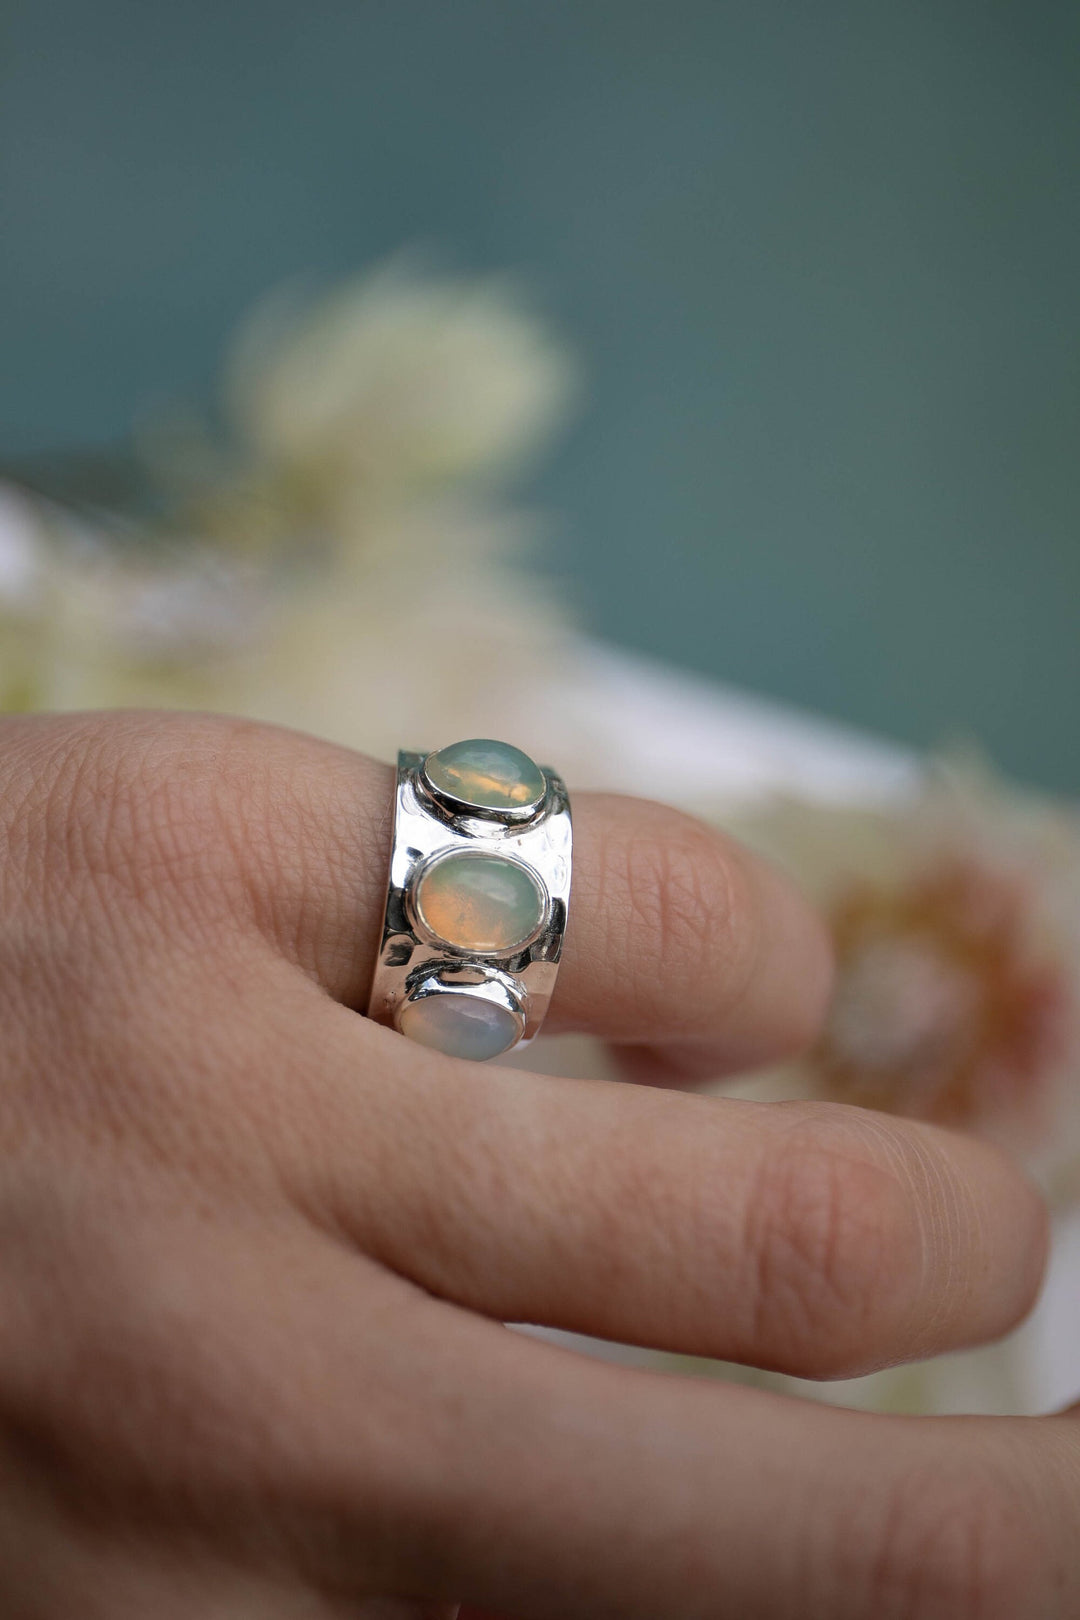 Triple Ethiopian Opal Ring set in Beaten Sterling Silver - Size 9 US